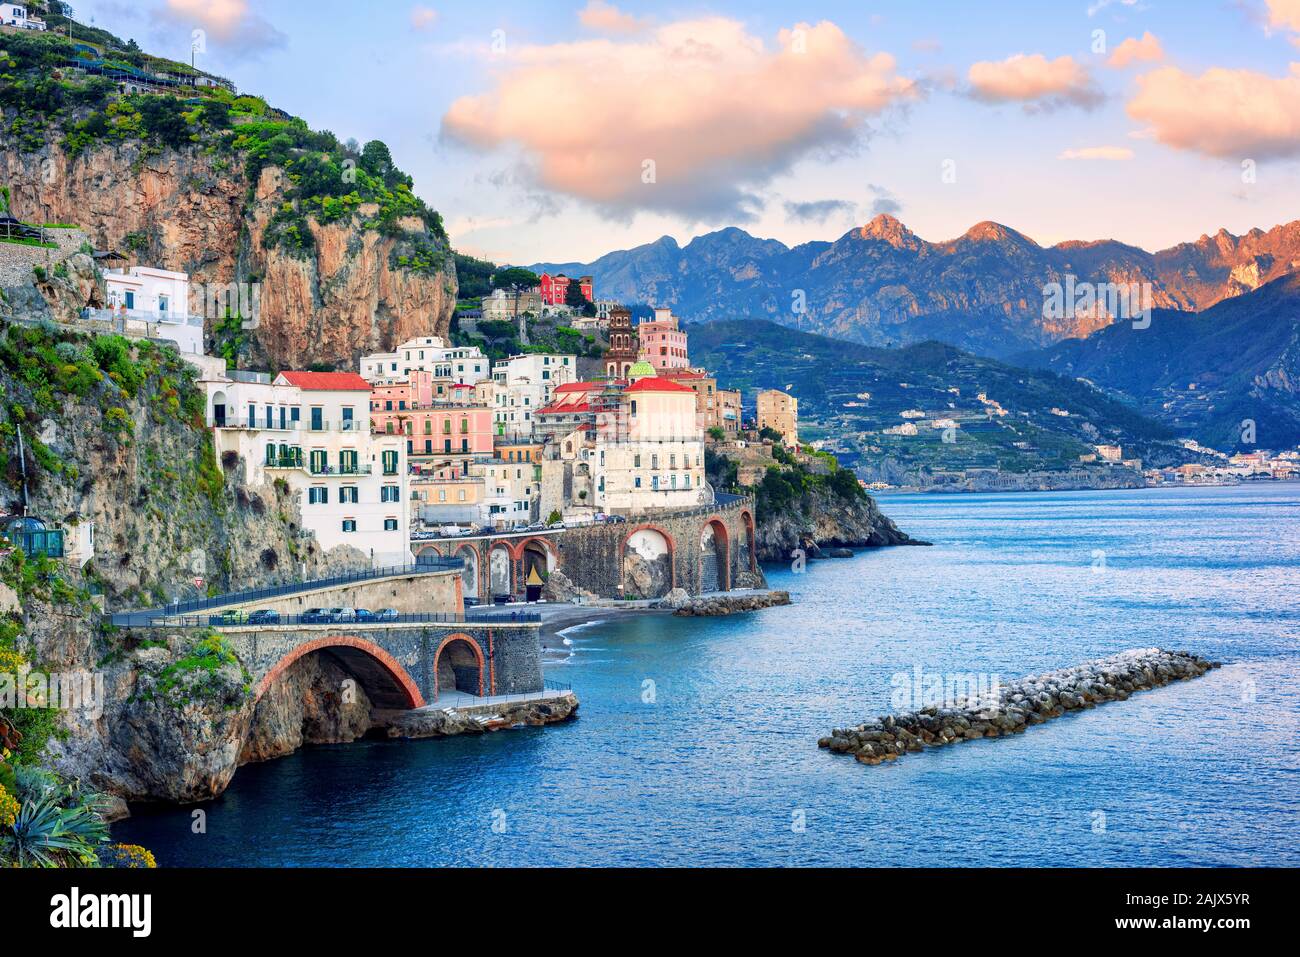 Atrani town on spectacular mediterranean Amalfi coast, Naples, Italy, in sunset light Stock Photo